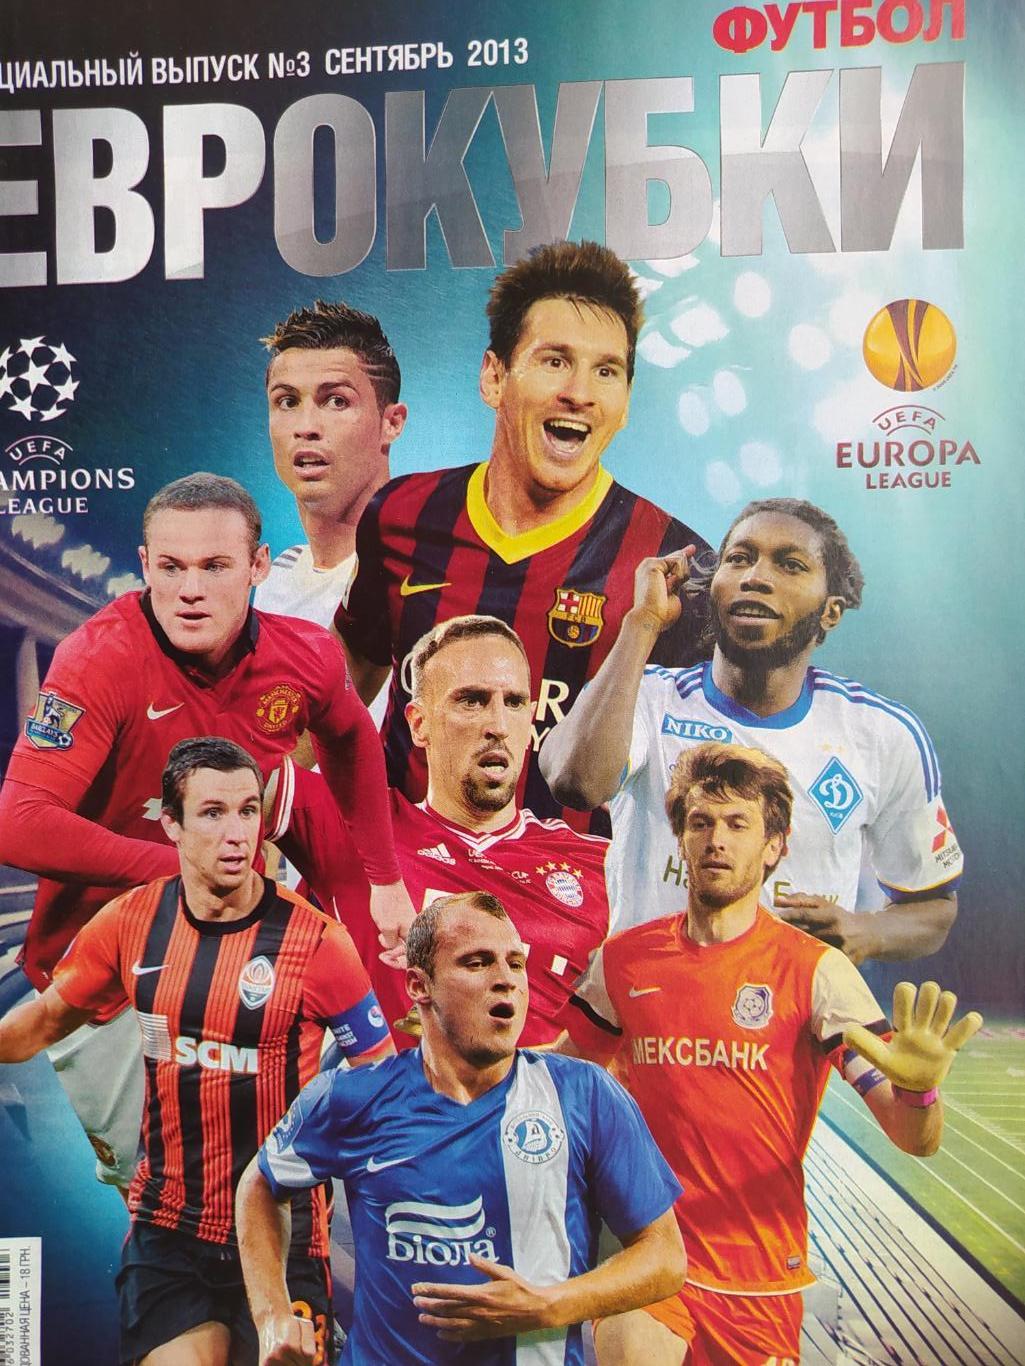 Еженедельник Футбол Украина спецвыпуск № 3 за 2013 год Еврокубки